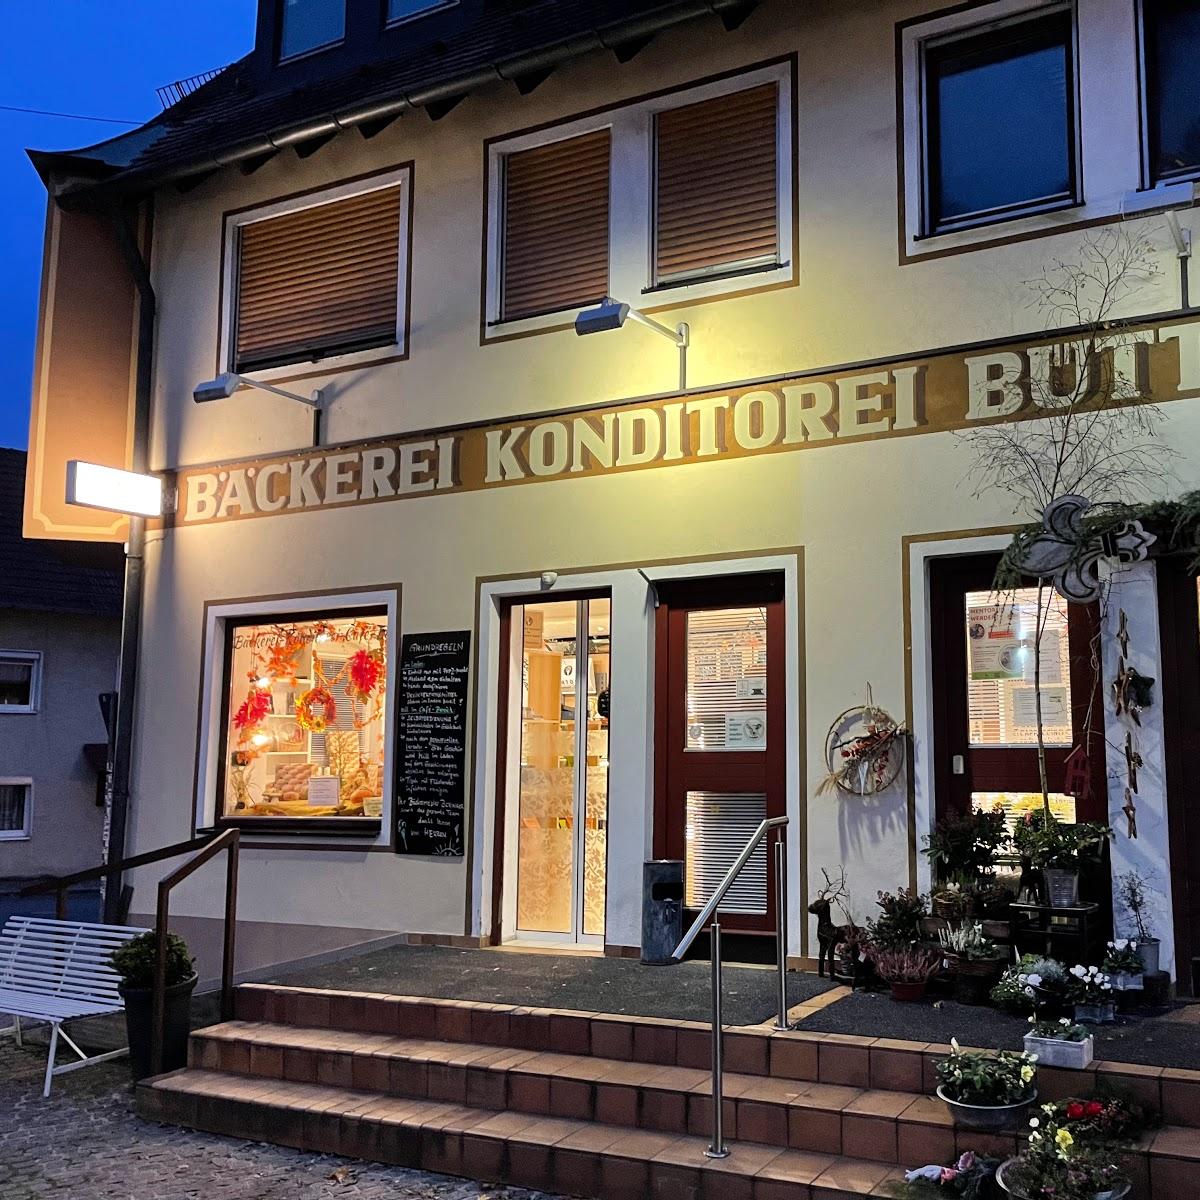 Restaurant "Bäckerei Büttner Inhaber Ralf Beringer" in Heiligenstadt i.OFr.